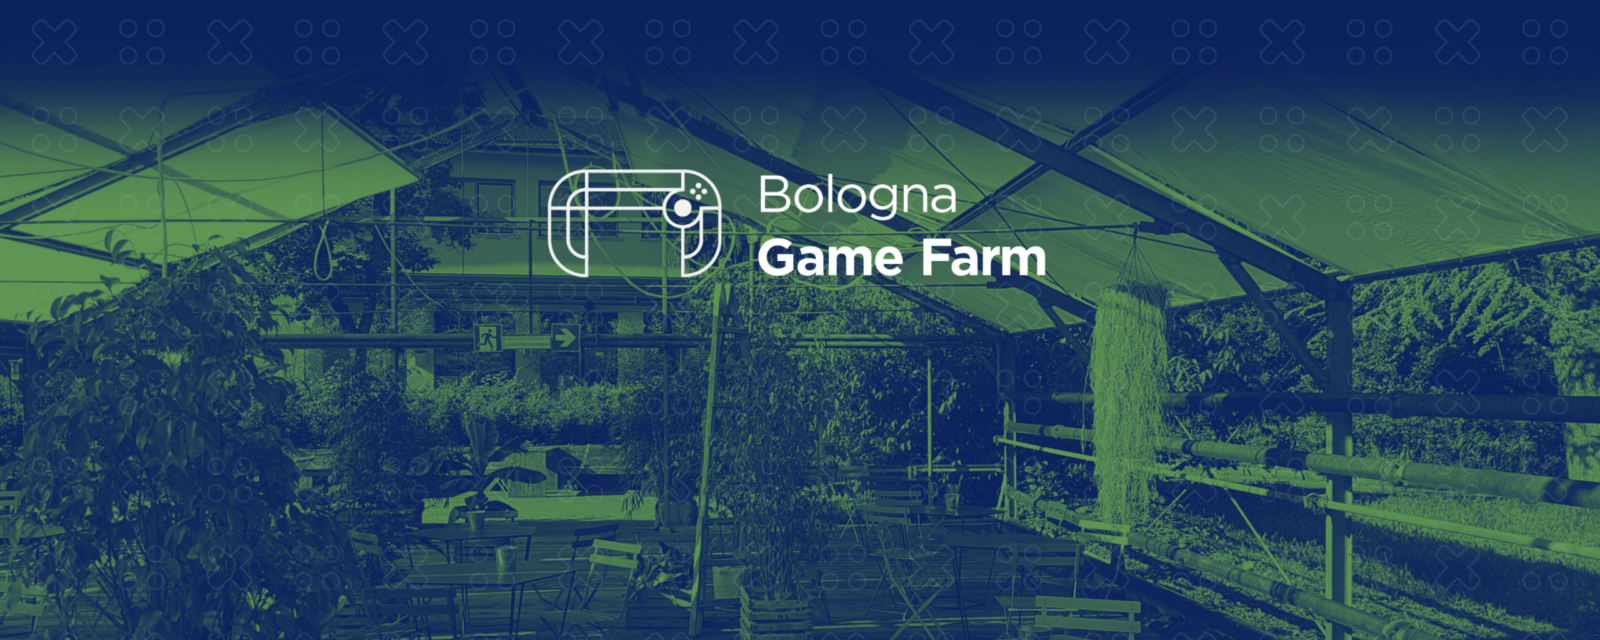 Nasce Bologna Game Farm: domani l’annuncio ufficiale thumbnail